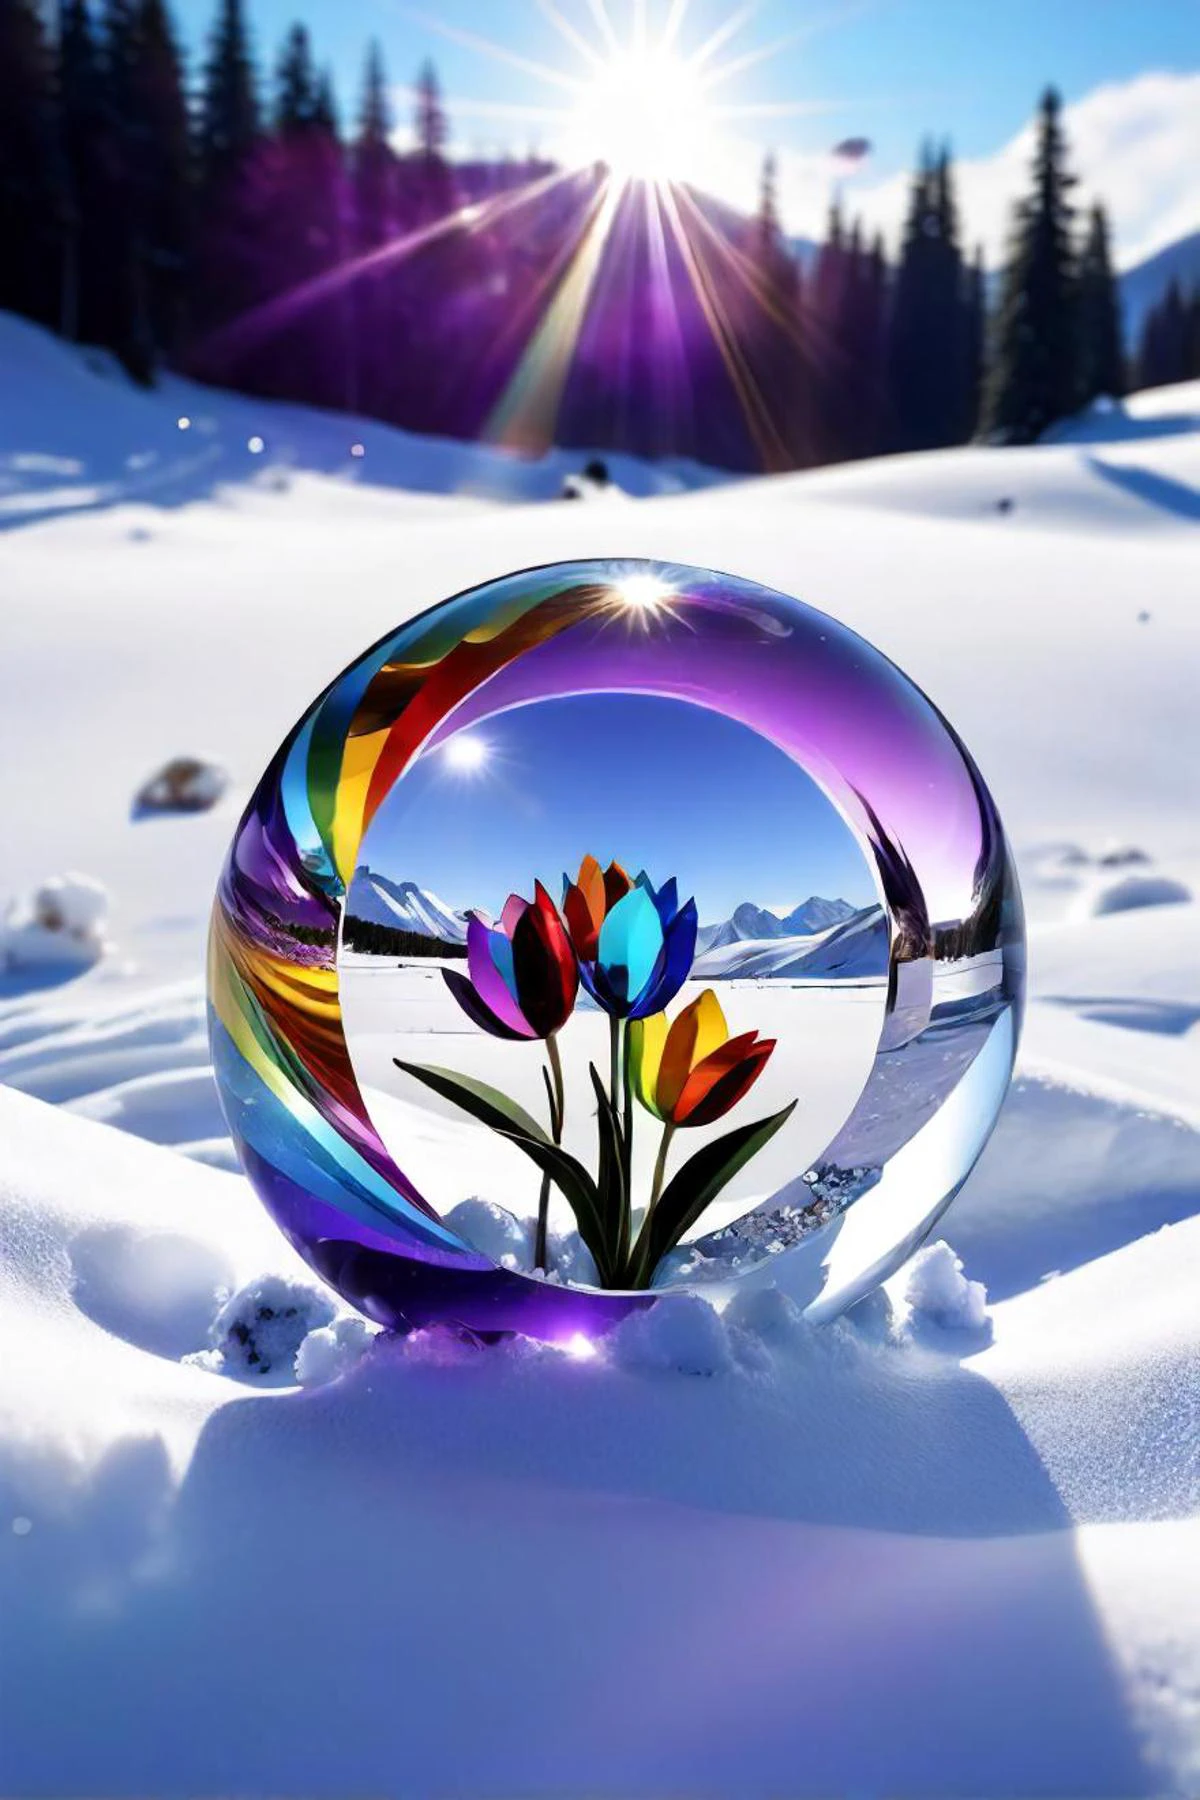 雪中的紫色 croct 与背景中的彩虹, igor zenin 的光线追踪图像, pixabay 比赛获胜者, 水晶立体主义, 美丽的花朵和水晶, 玻璃花, 色彩斑斓的玻璃艺术